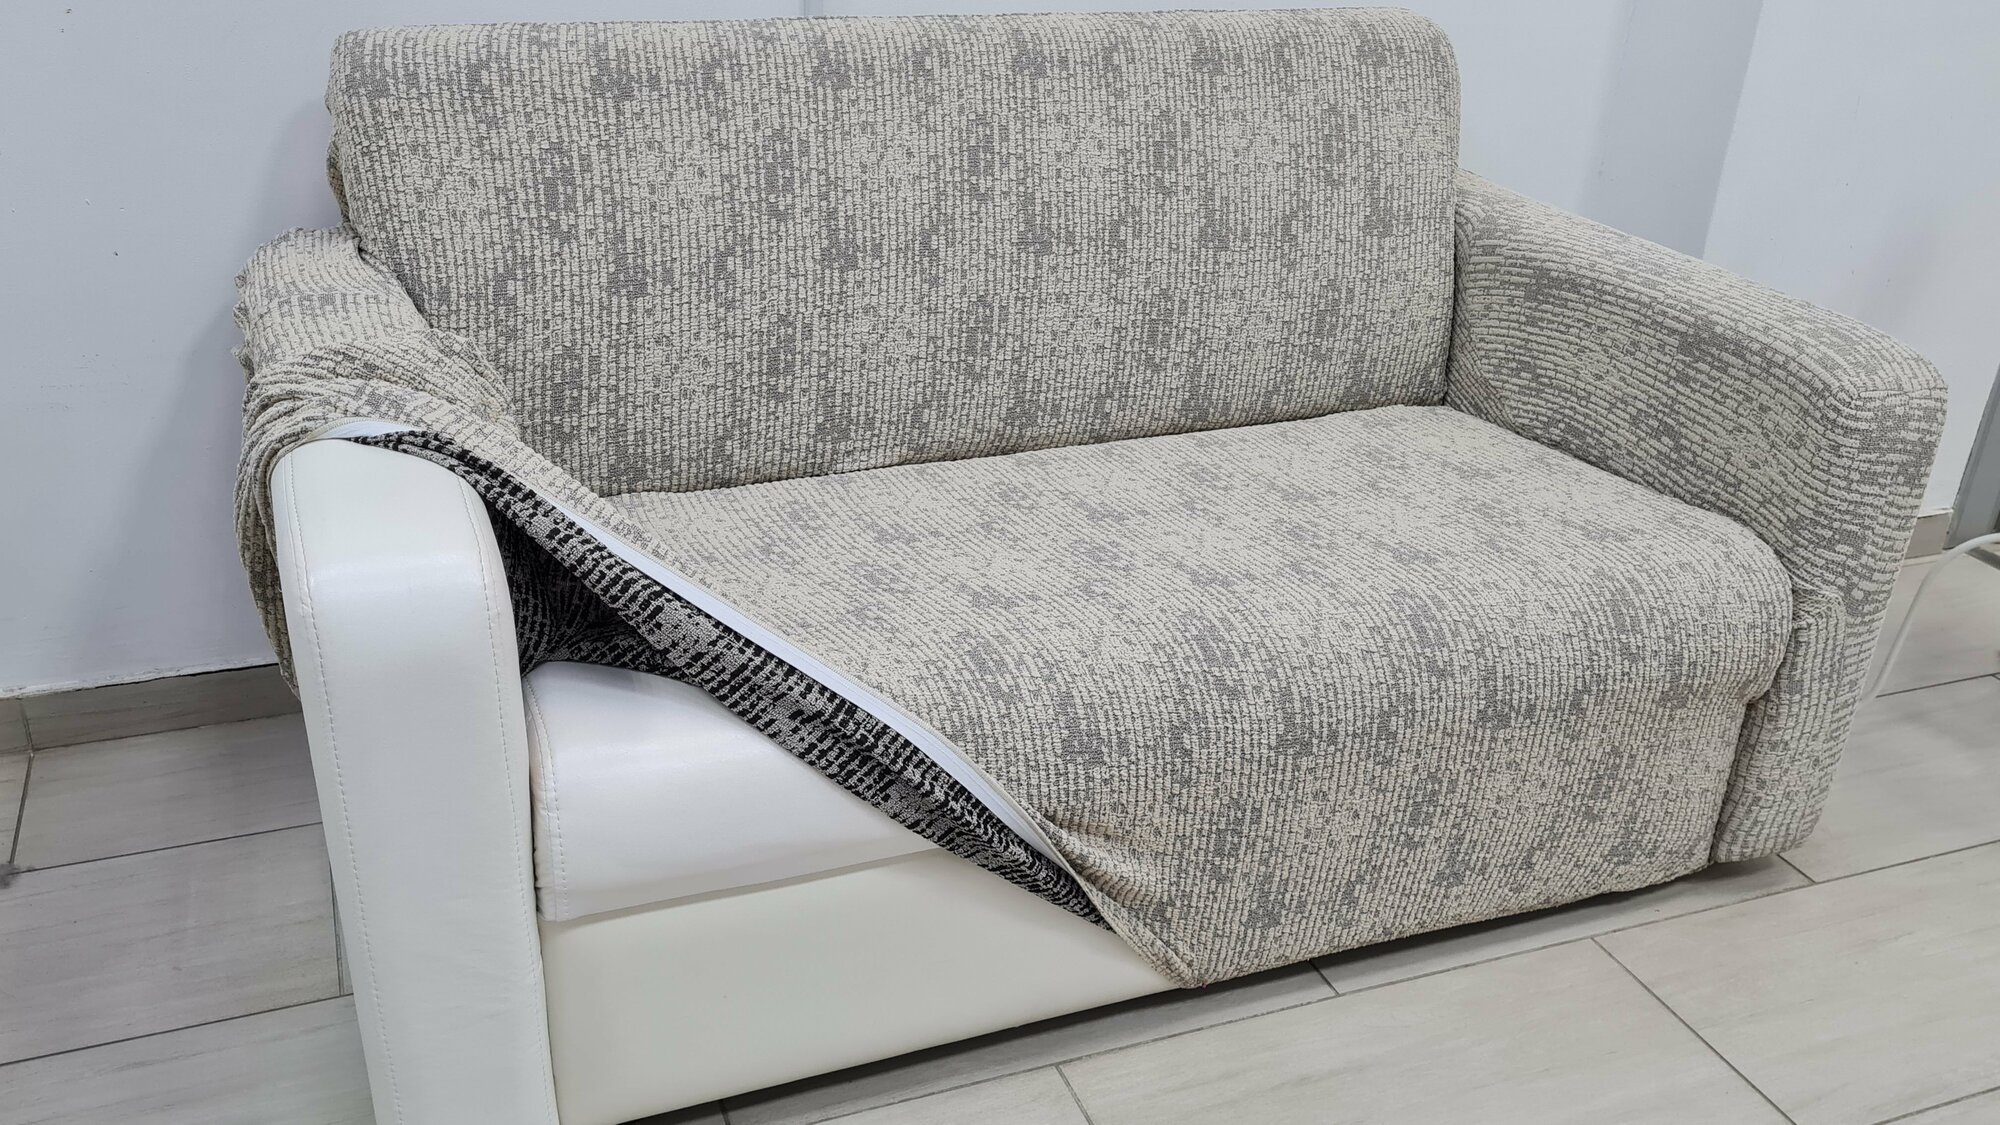 Чехол универсальный Жаккард мрамор серый на 3-х местный диван, на резинке